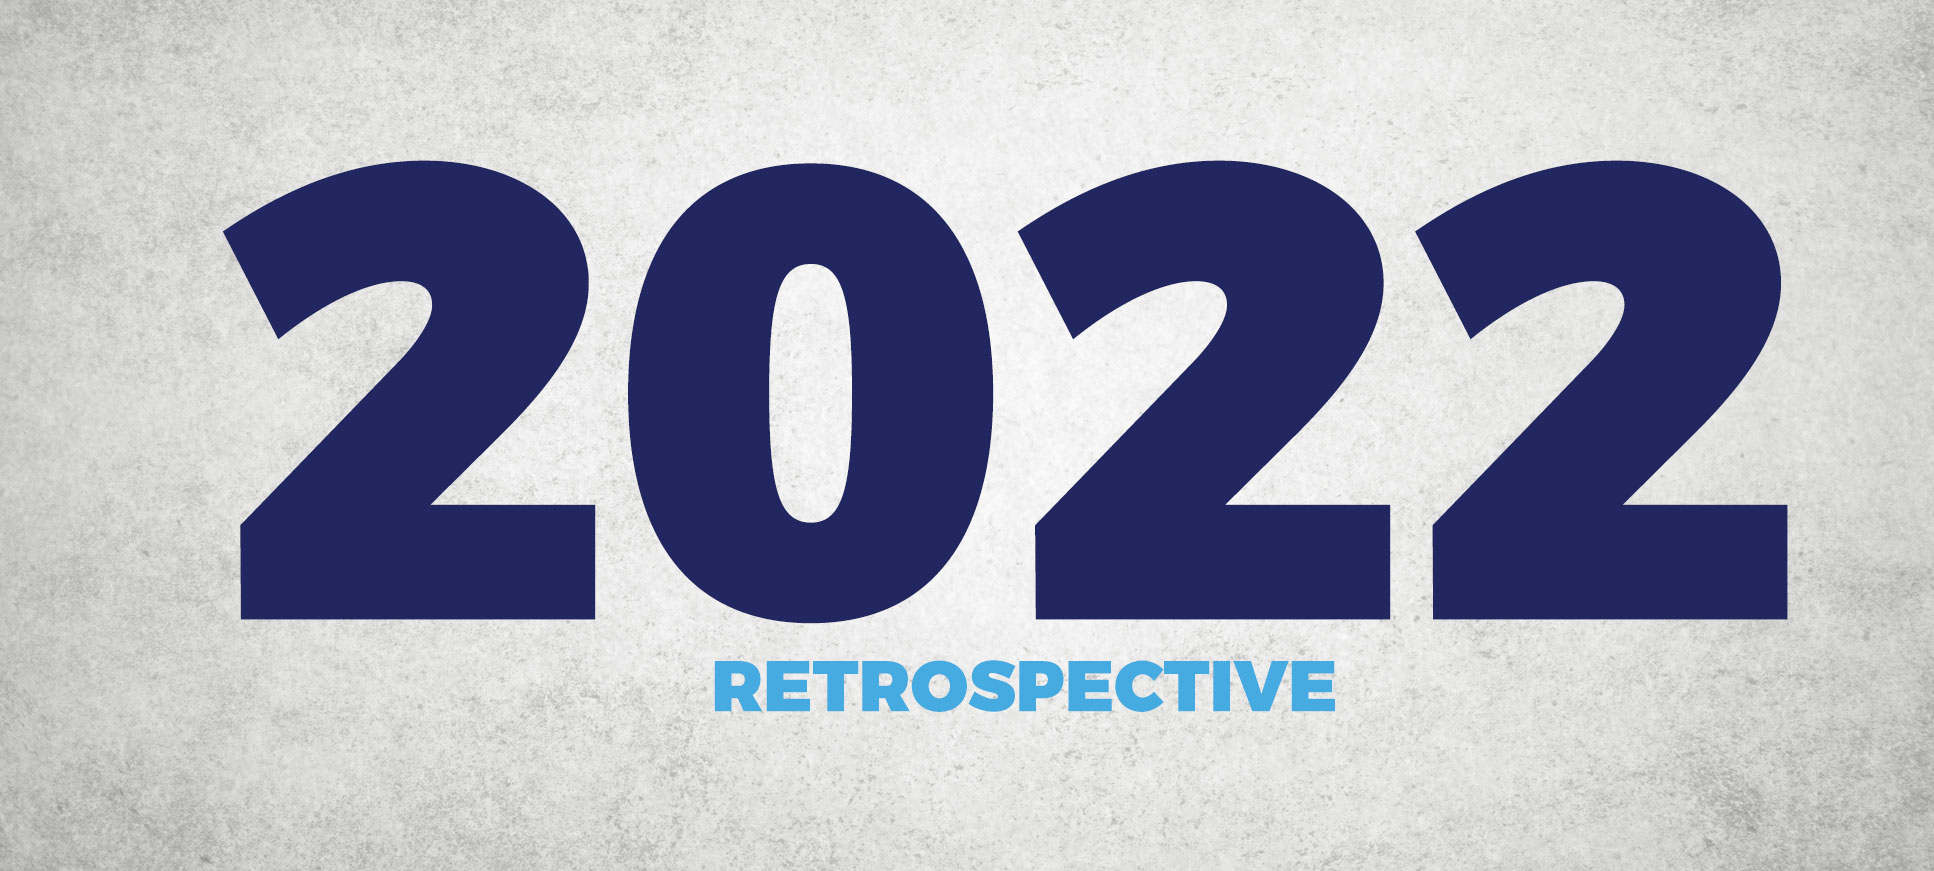 2022 retrospective